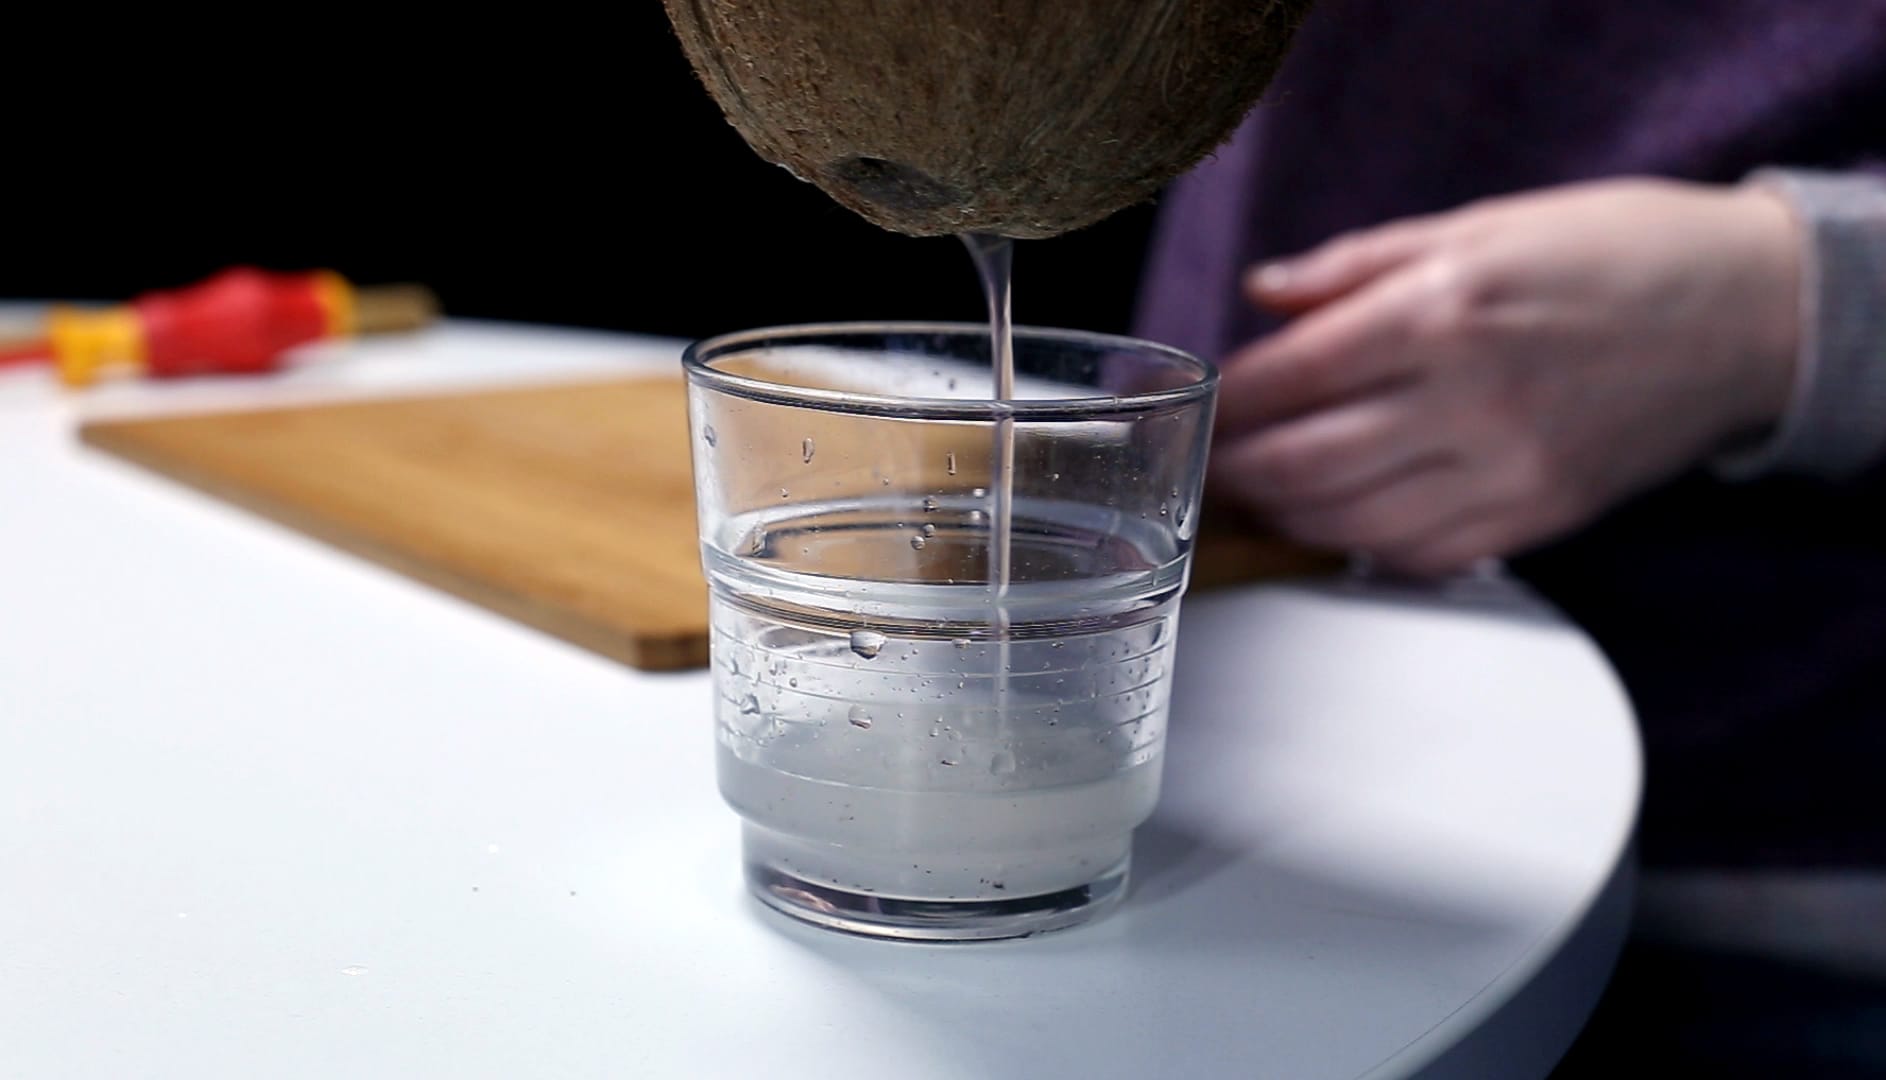 Kokosnuss: Schritt 2 – Aus den gebohrten Löchern das Kokoswasser in einem Glas auffangen.